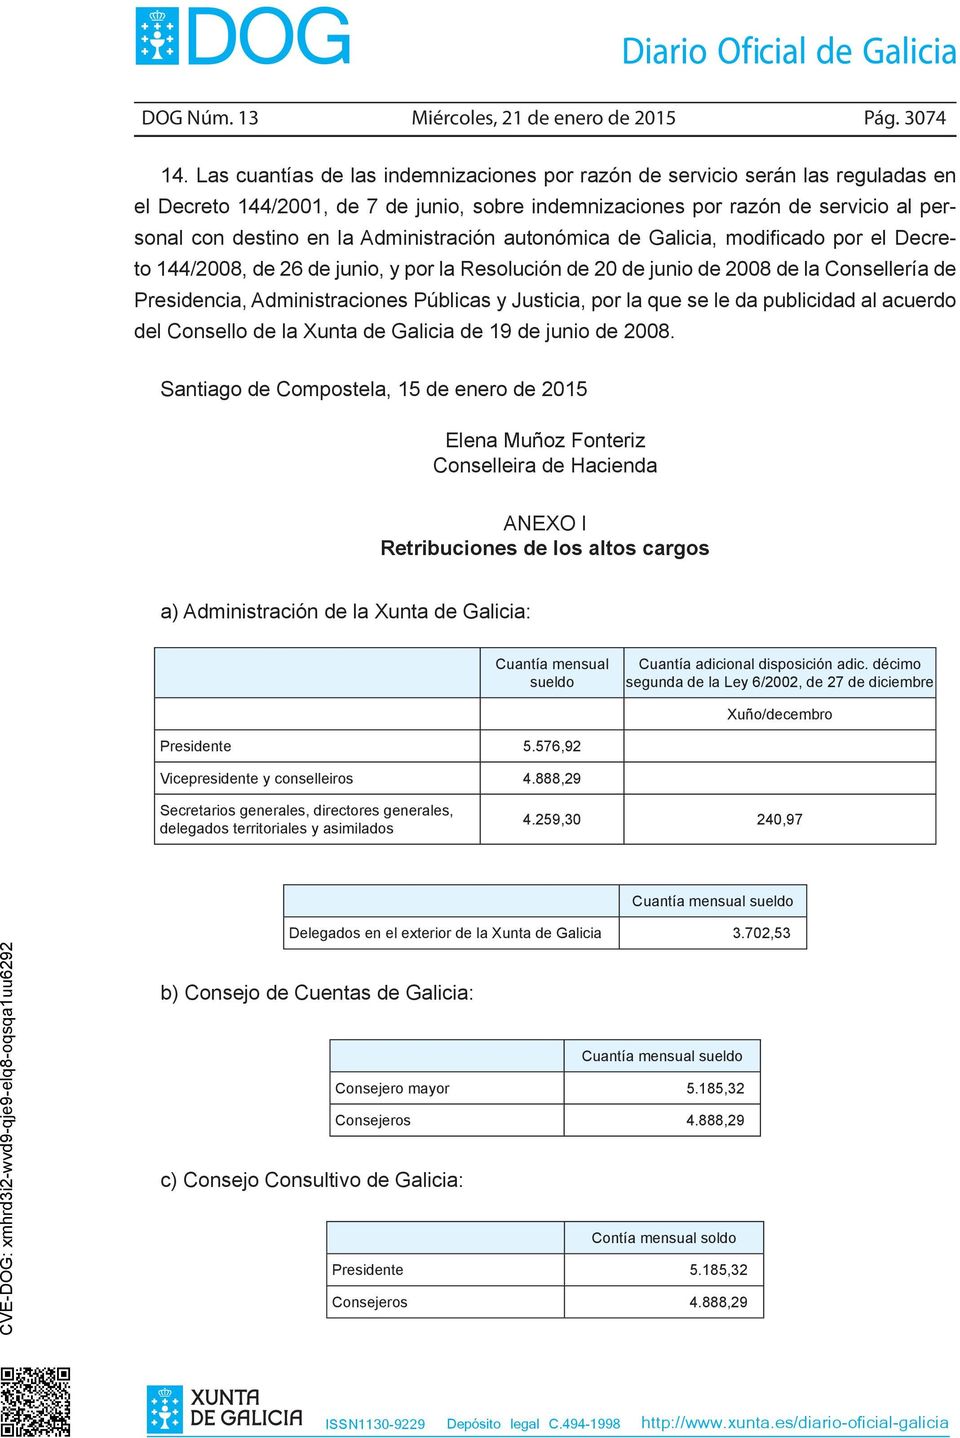 Administración autonómica de Galicia, modificado por el Decreto 144/2008, de 26 de junio, y por la Resolución de 20 de junio de 2008 de la Consellería de Presidencia, Administraciones Públicas y